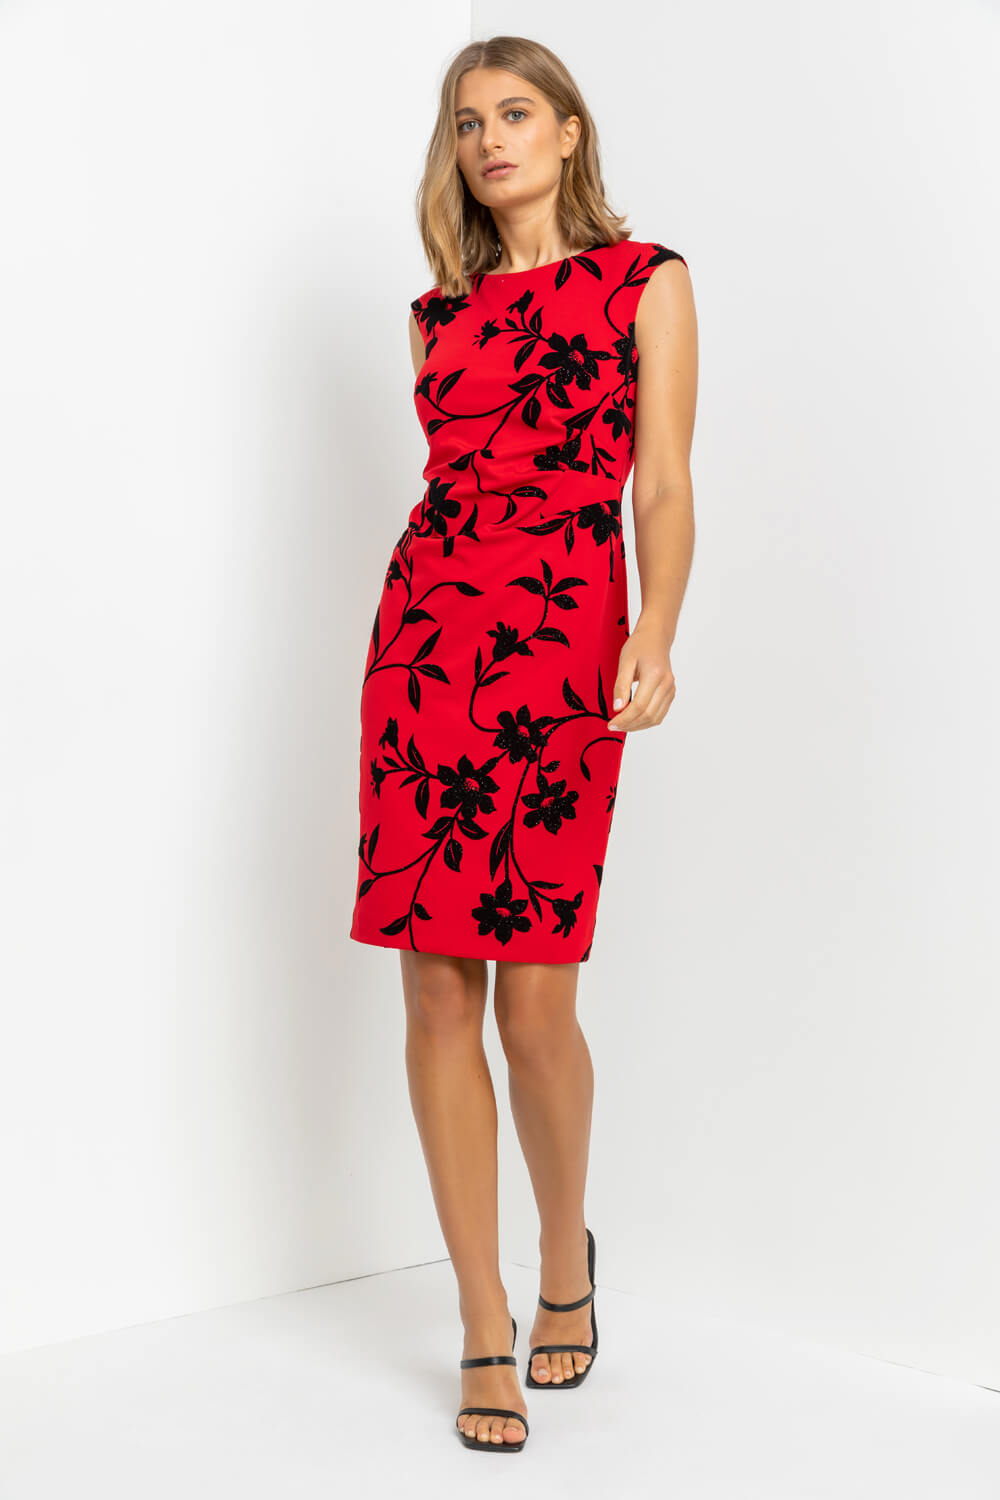 Floral Flocked Shimmer Shift Dress in Red - Roman Originals UK